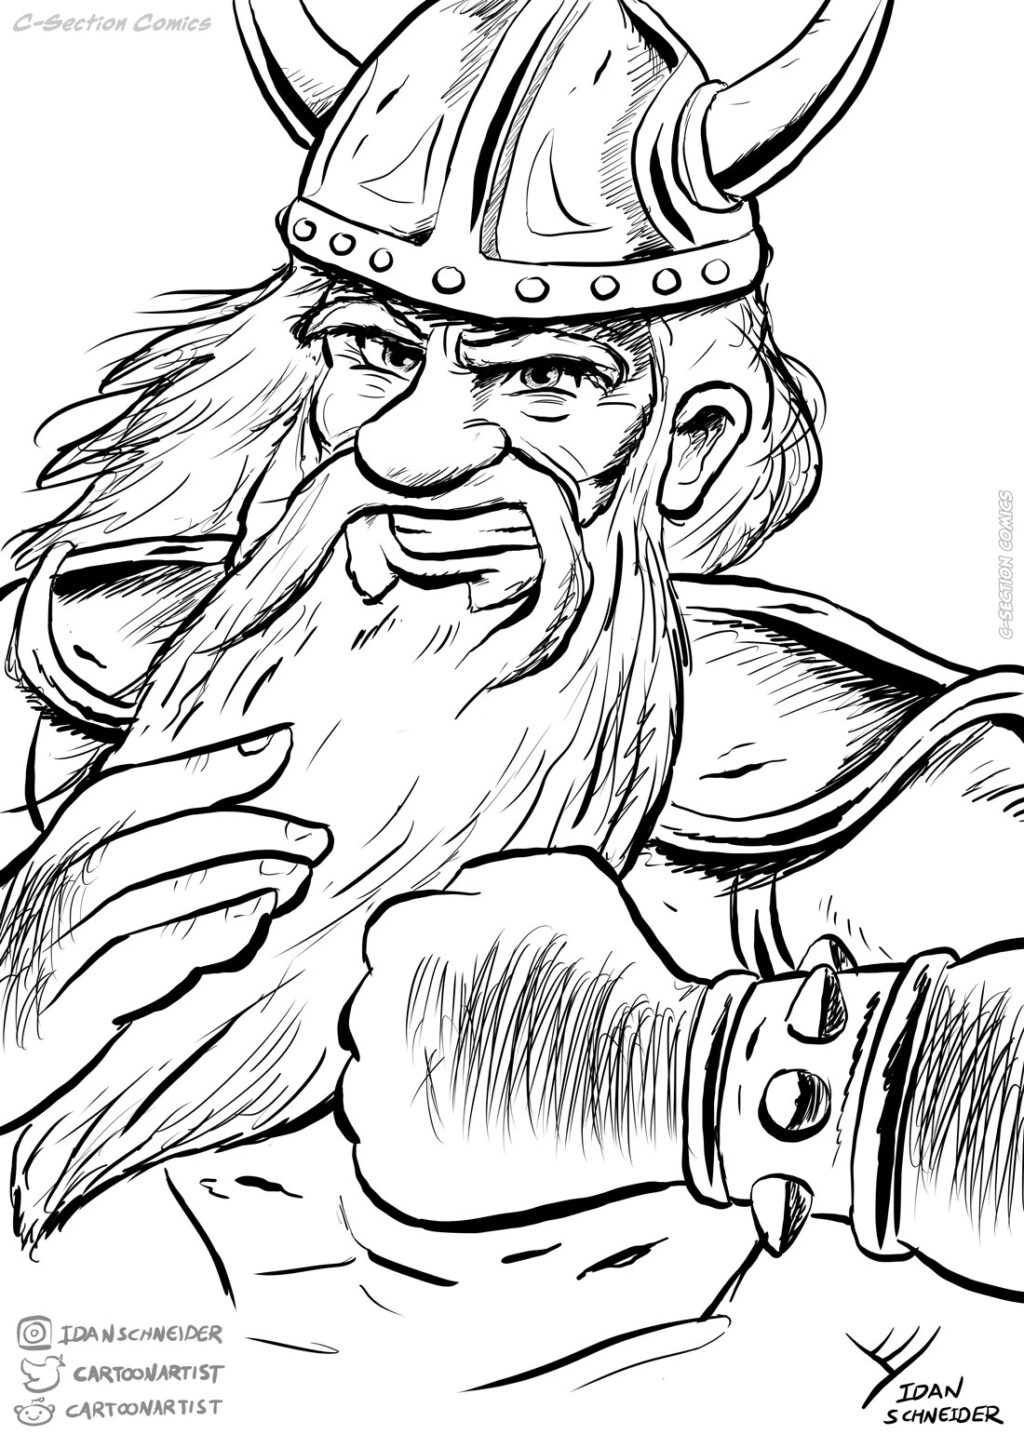 Dwarf warrior - Ink drawing